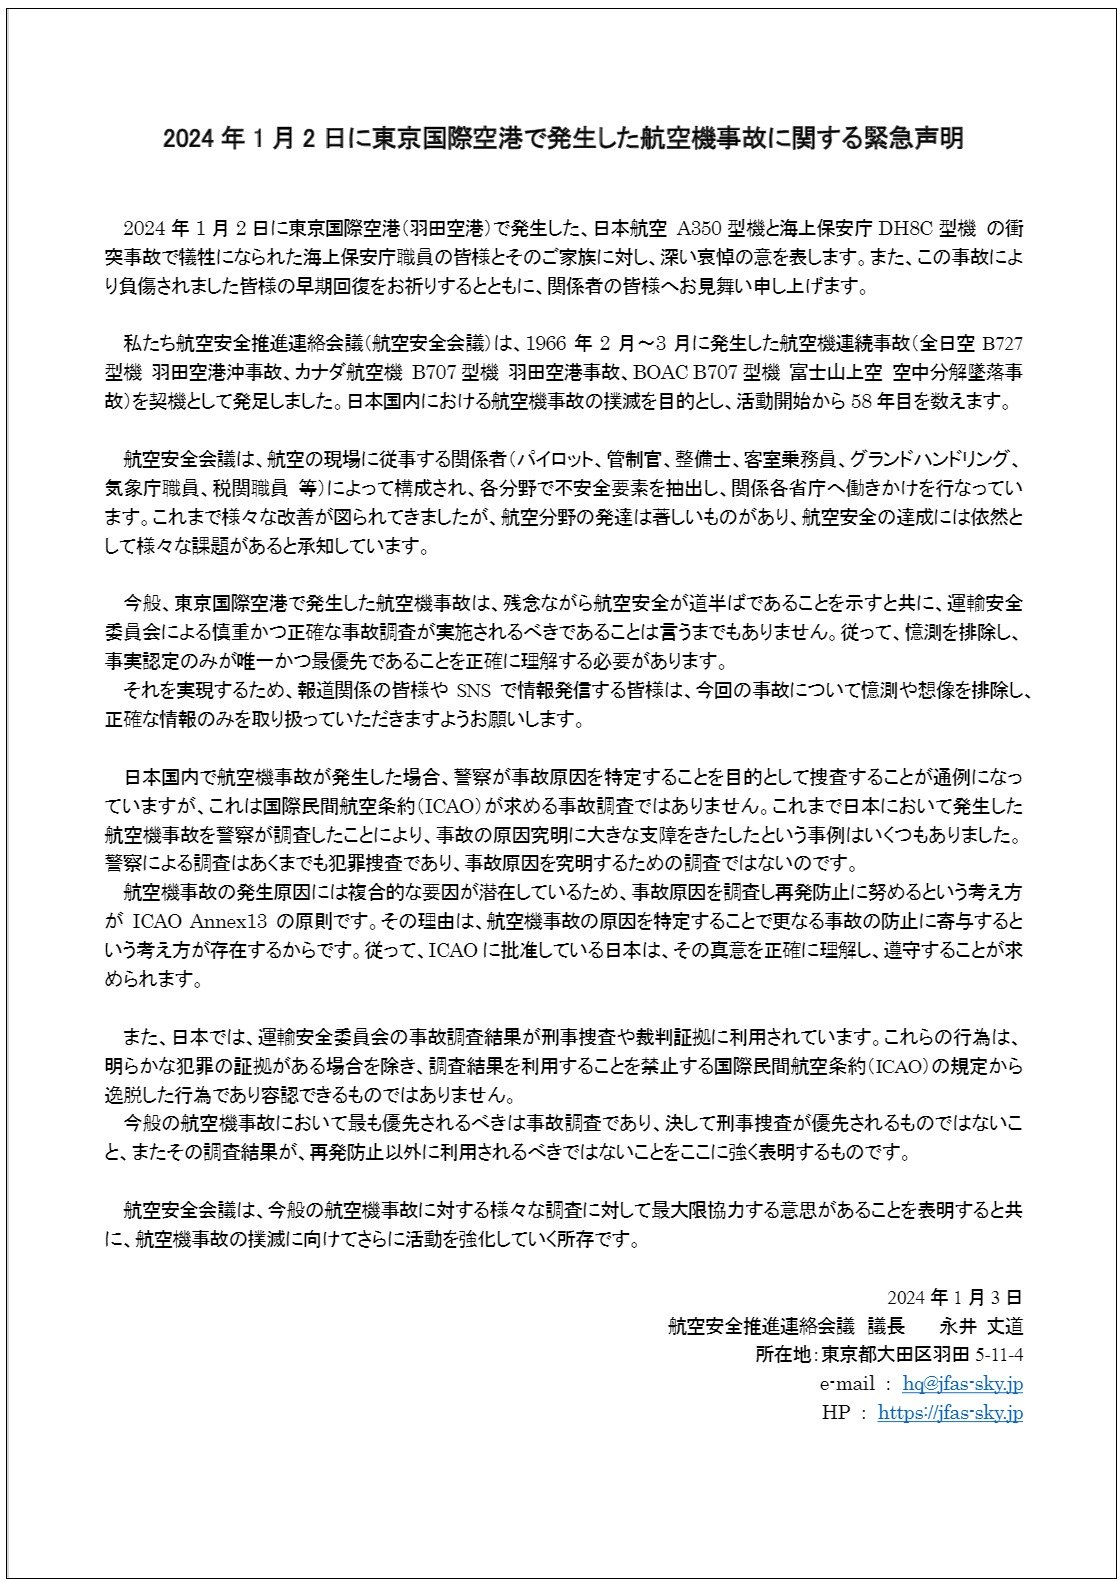 羽田空港事故、報道やSNS発信は「憶測・想像を排除して」　パイロットなどの民間団体が要望